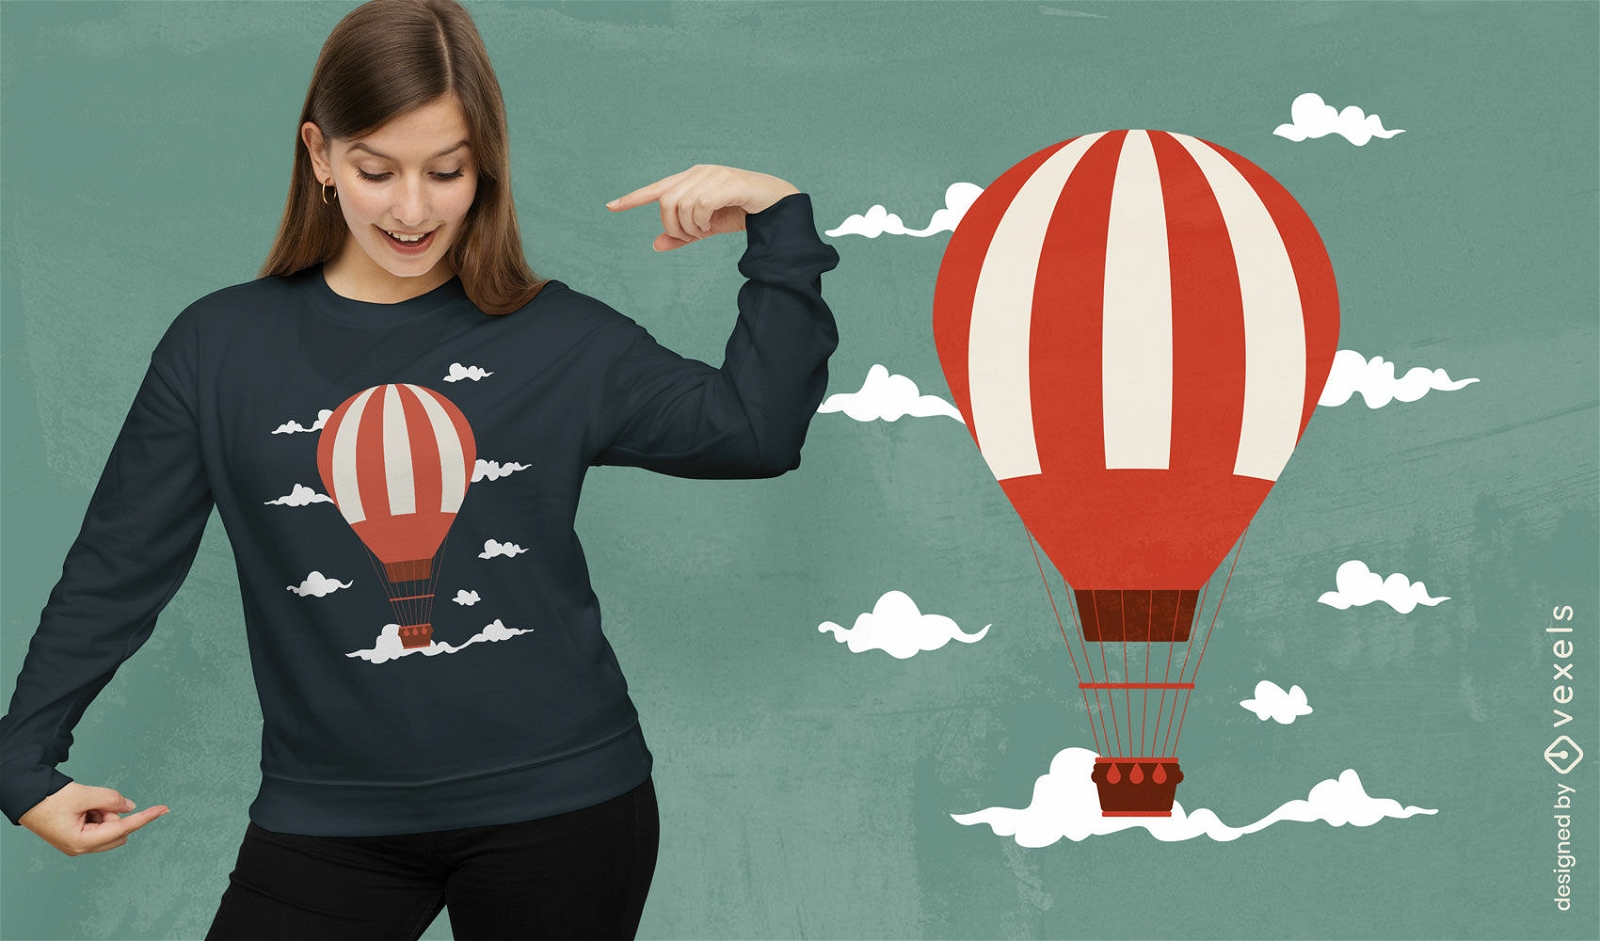 Diseño de camiseta de aventura en globo aerostático.